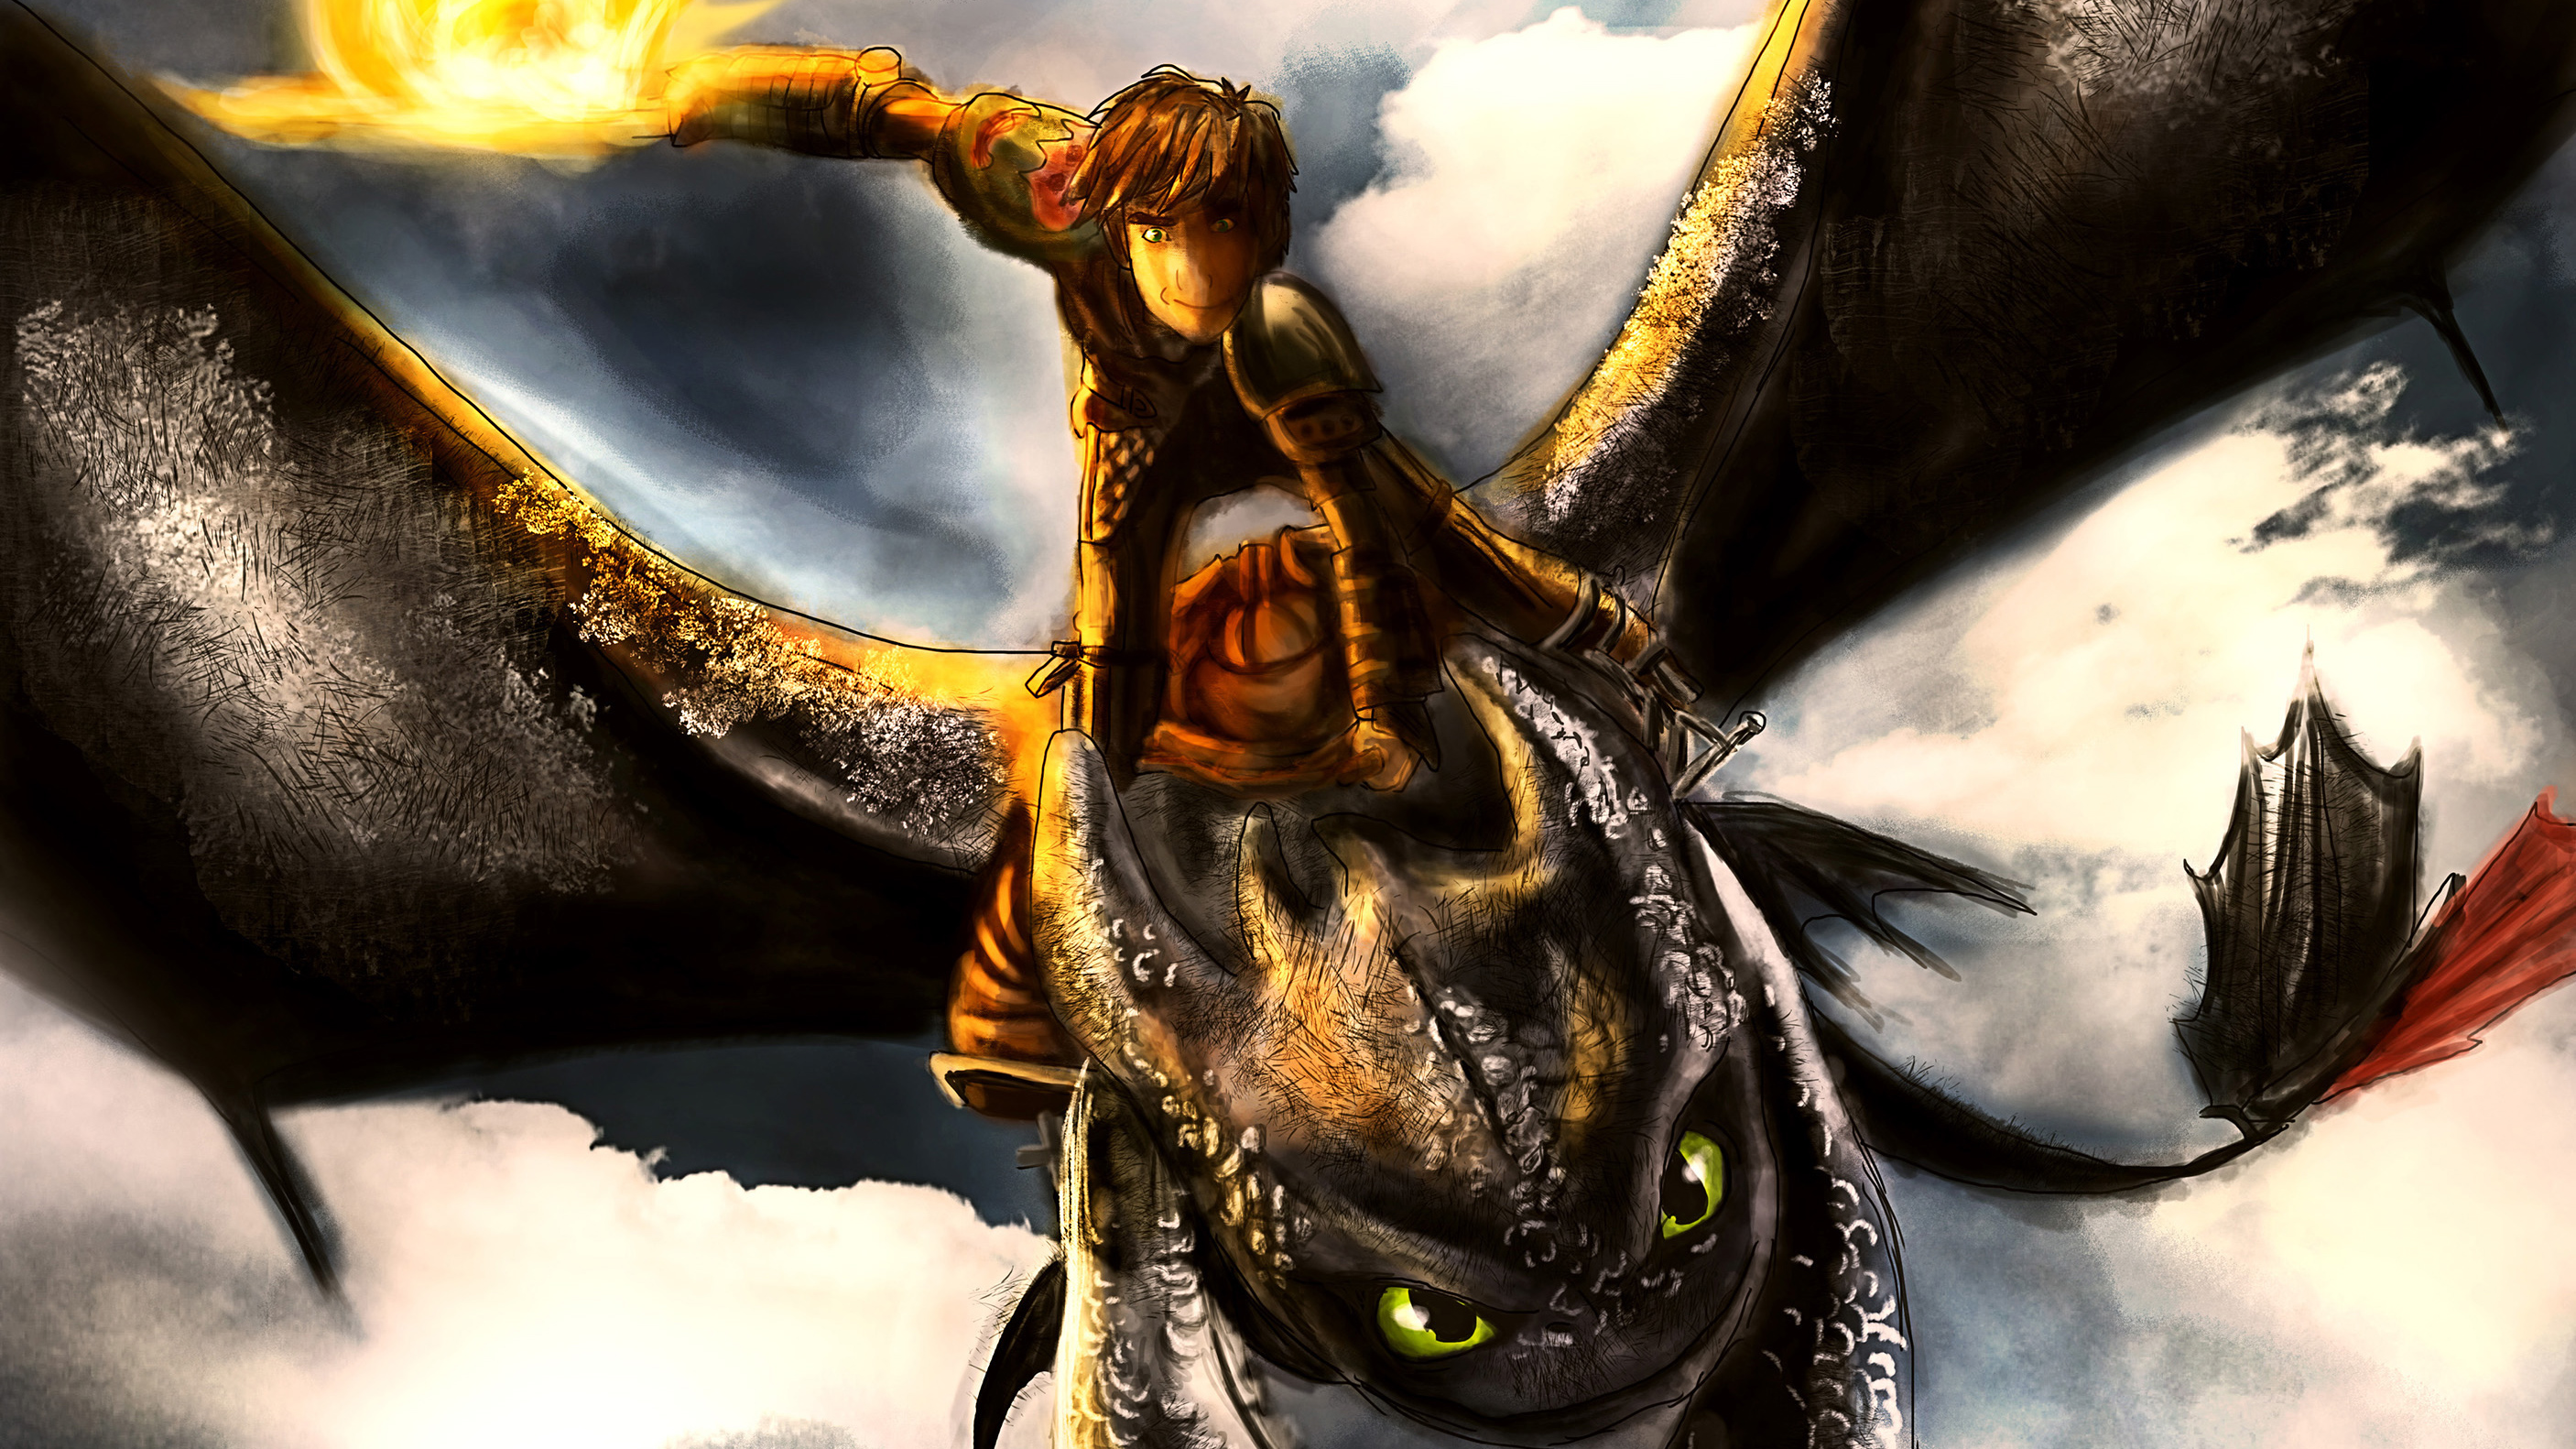 dragon fonds d'écran hd 1366x768,oeuvre de cg,dragon,démon,personnage fictif,créature mythique